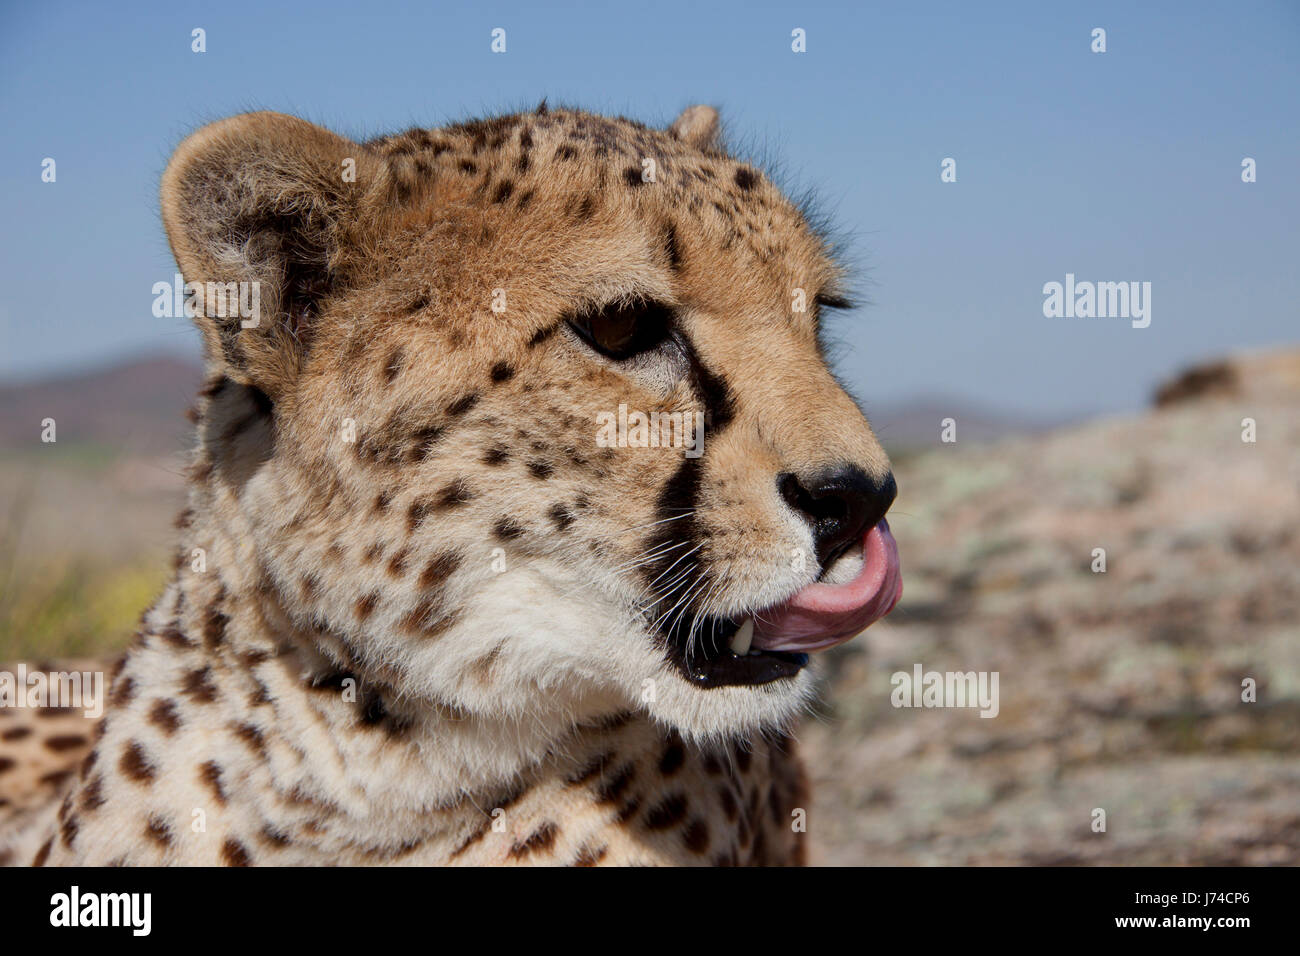 preening cheetah Stock Photo